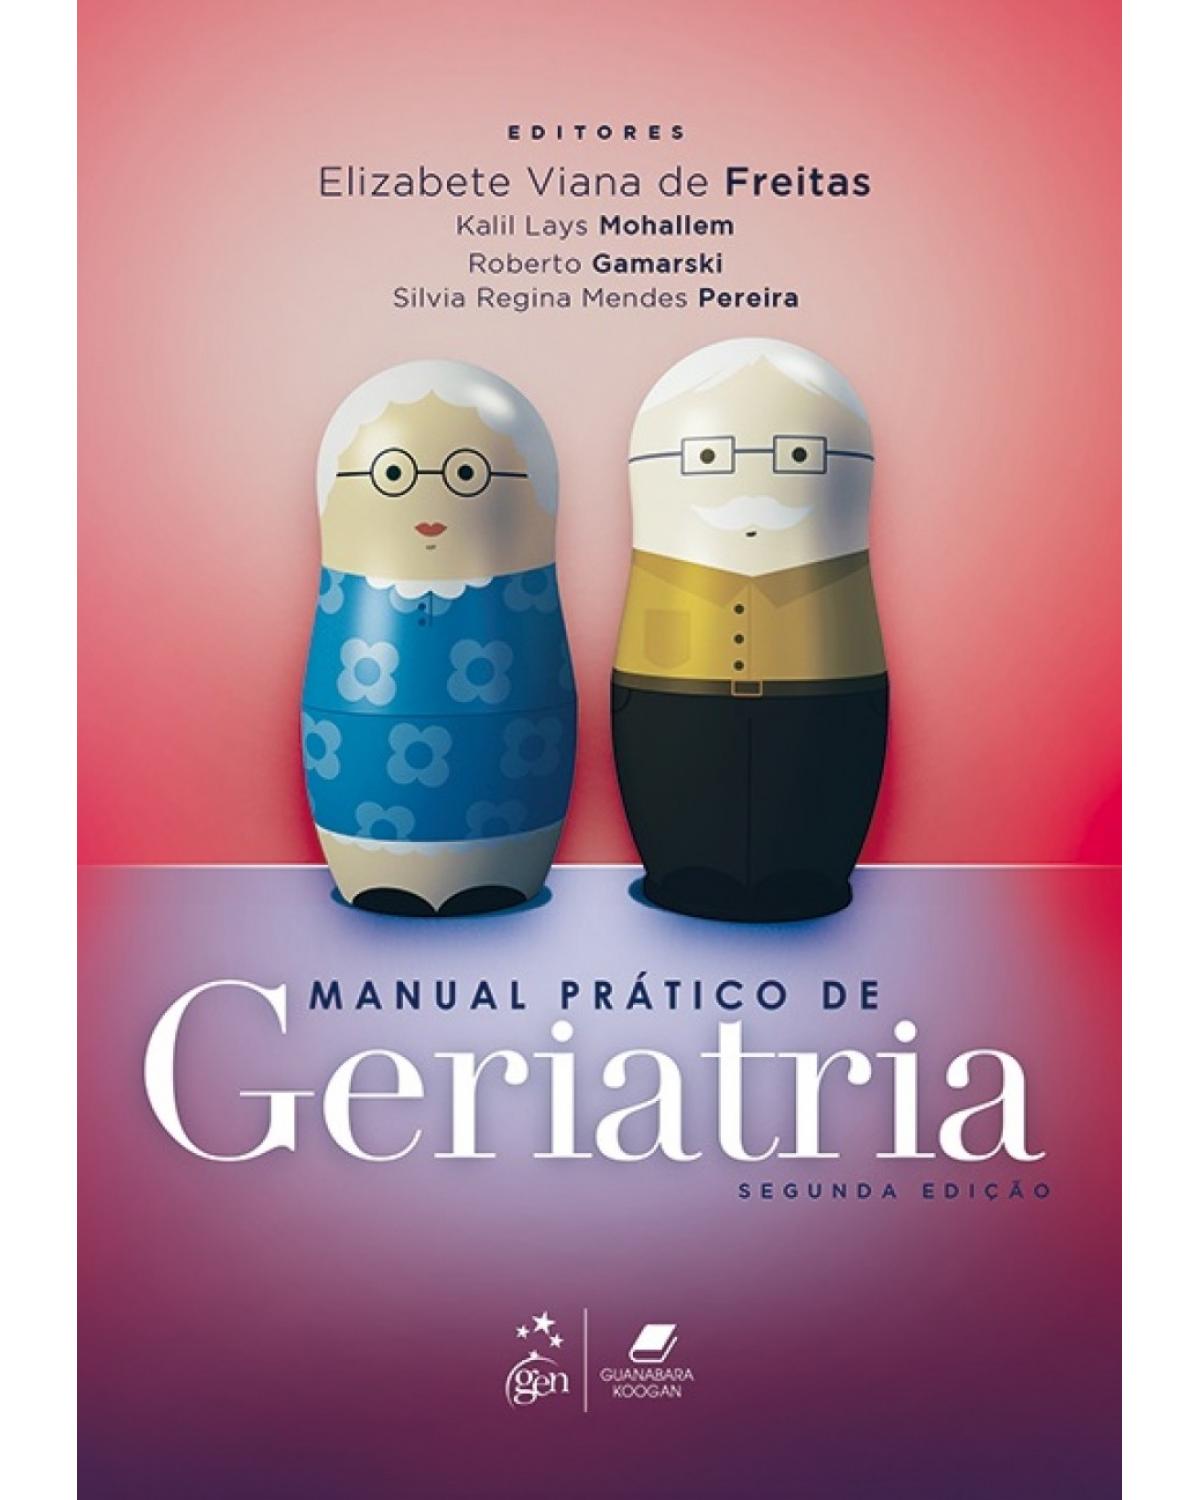 Manual prático de geriatria - 2ª Edição | 2017